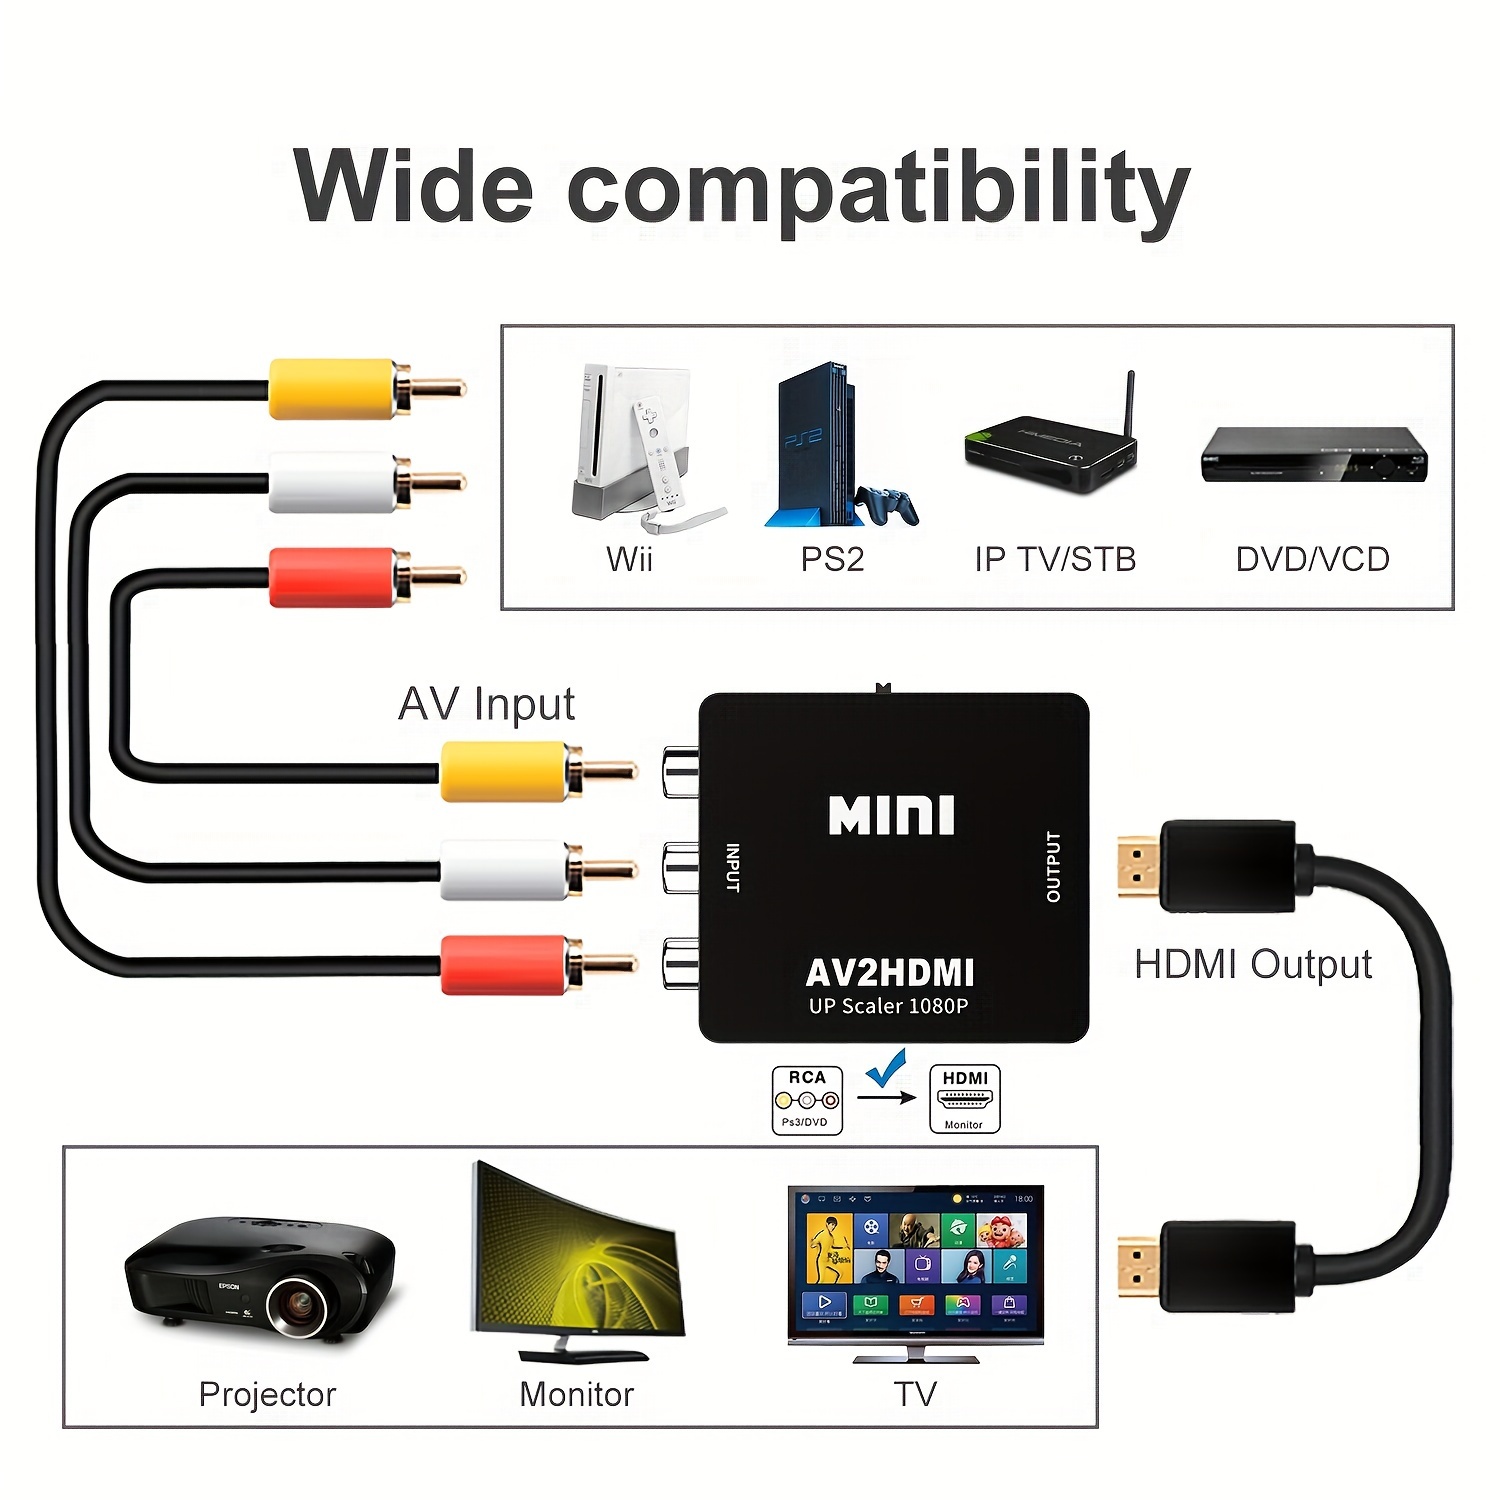  Cable HDMI a RCA, cable adaptador de convertidor HDMI a RCA,  1080P HDMI a AV 3RCA CVBs compuesto de audio de video compatible con   Fire Stick, Roku, Chromecast, PC, portátil